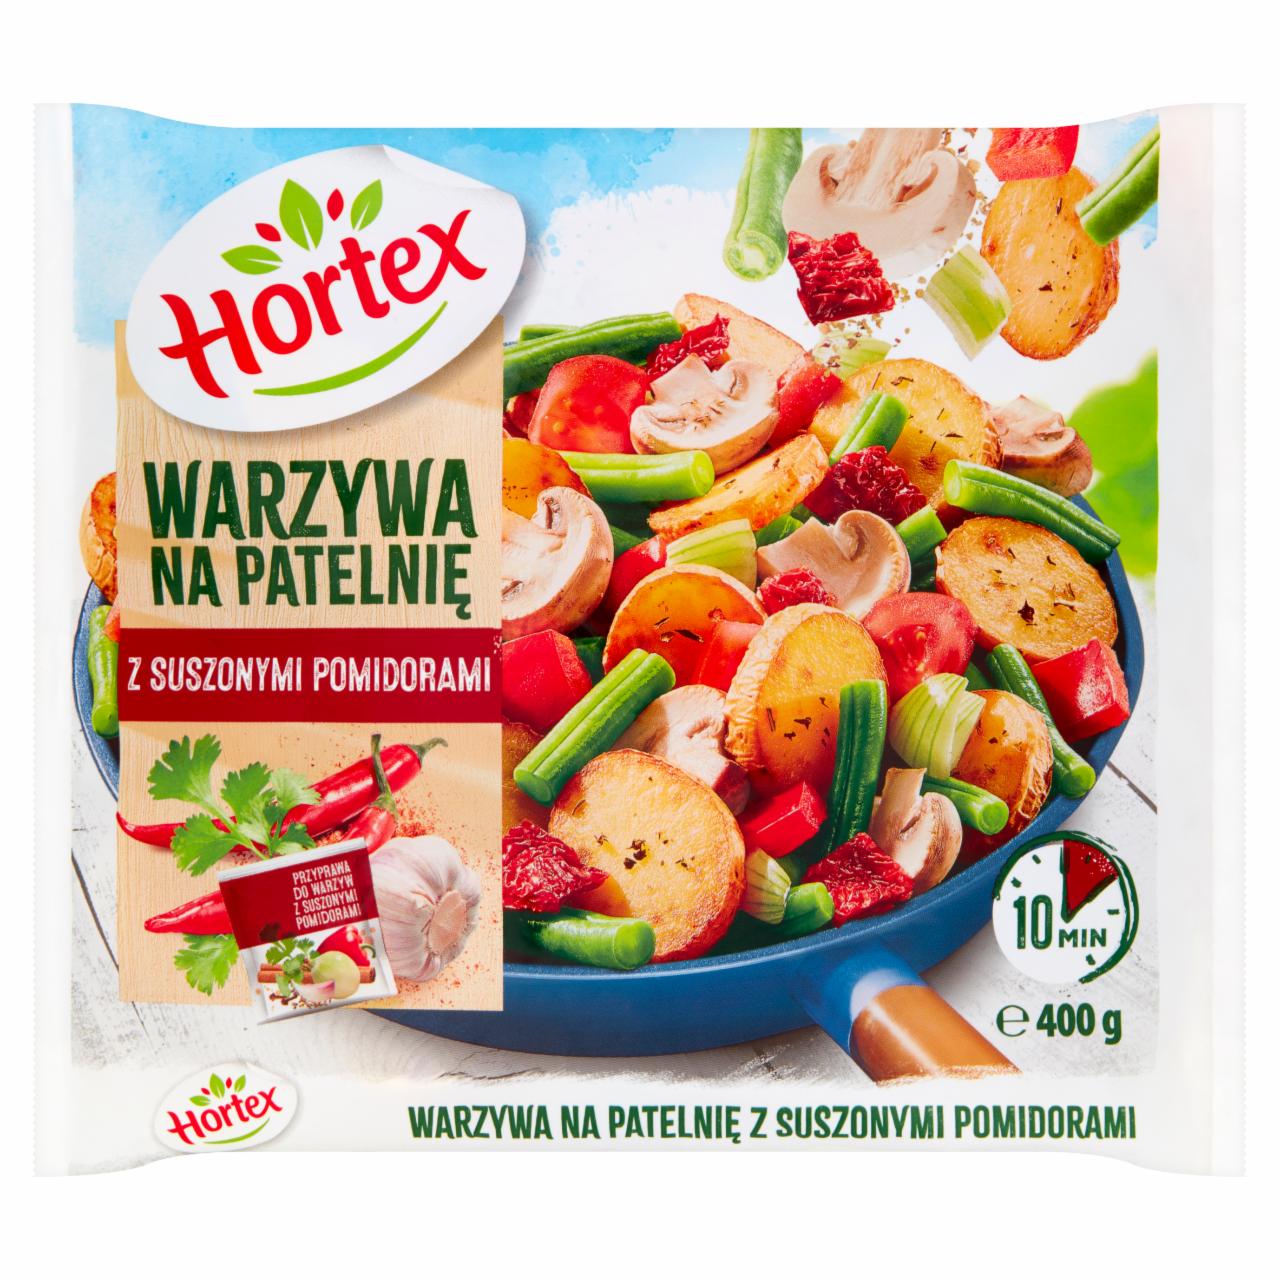 Zdjęcia - Hortex Warzywa na patelnię z suszonymi pomidorami 400 g 